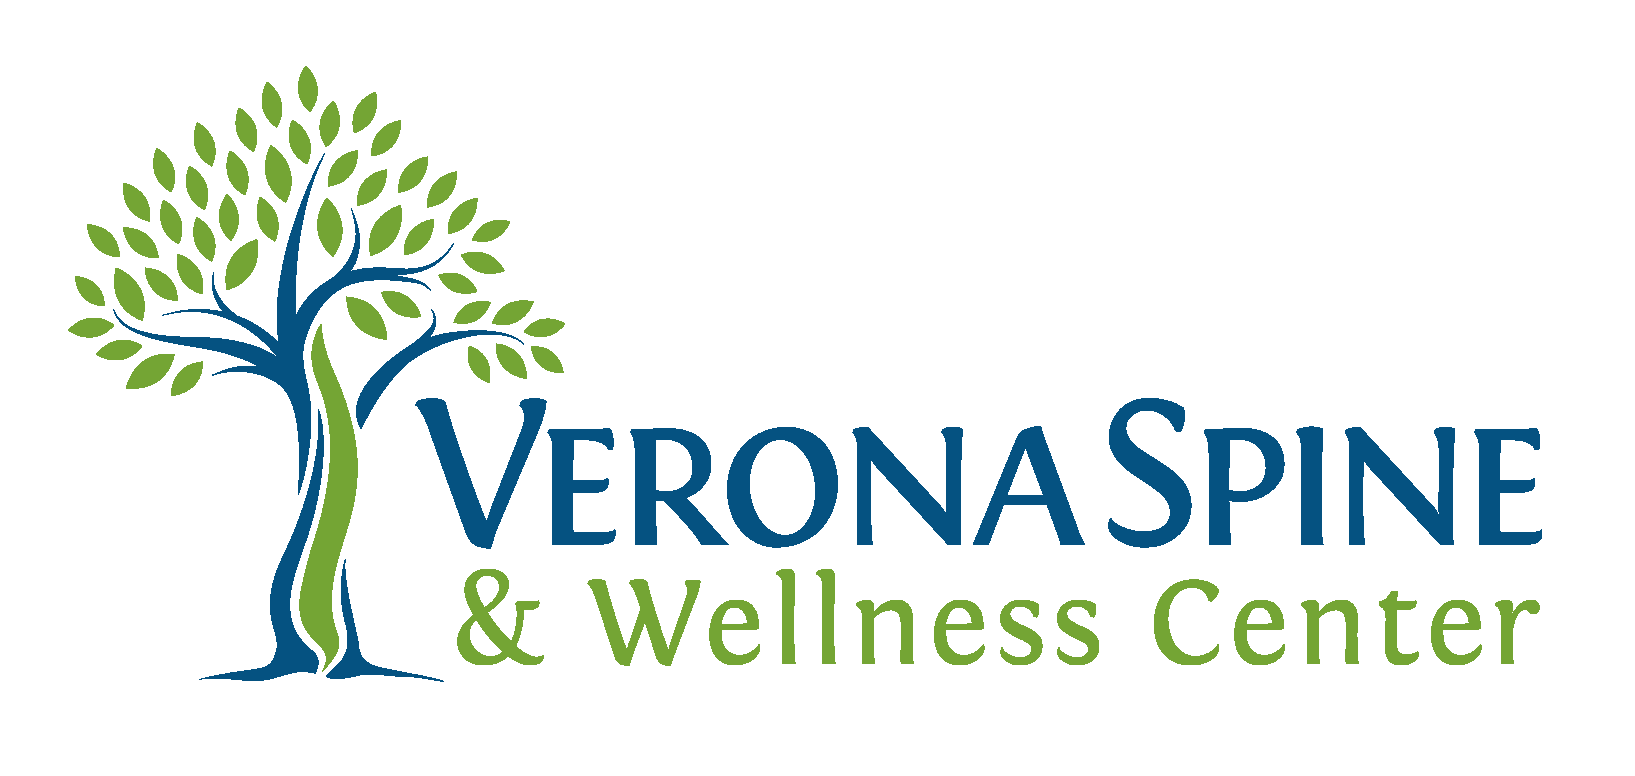 Verona Spine & Wellness Center, links to their site